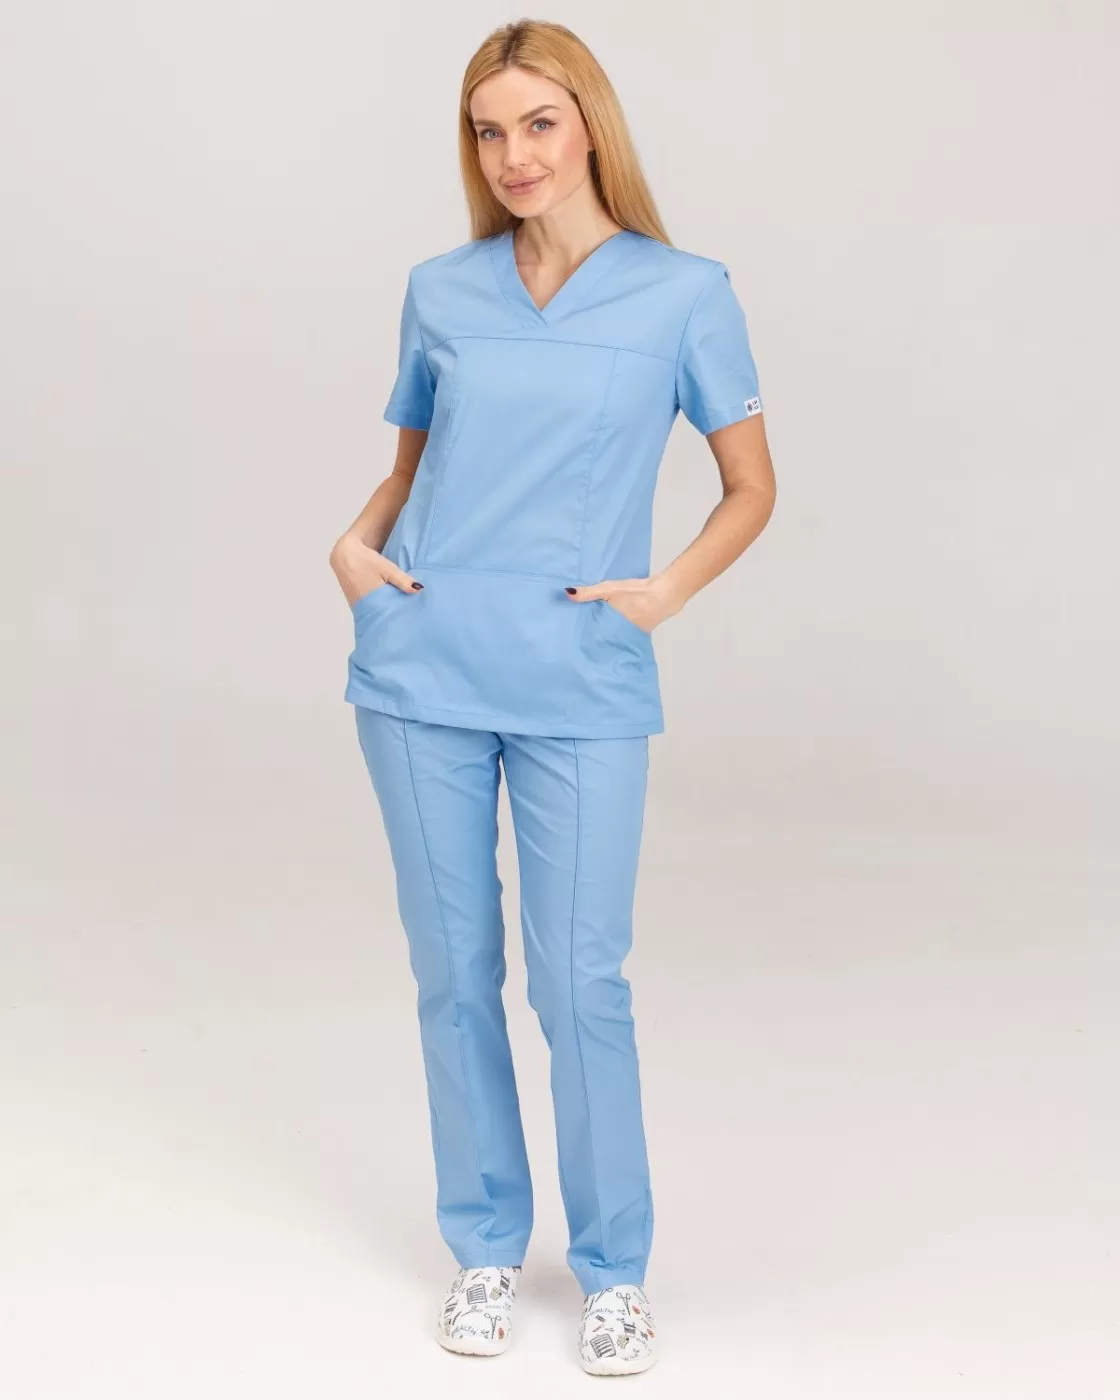 Медицинская женская рубашка Топаз светло-голубая